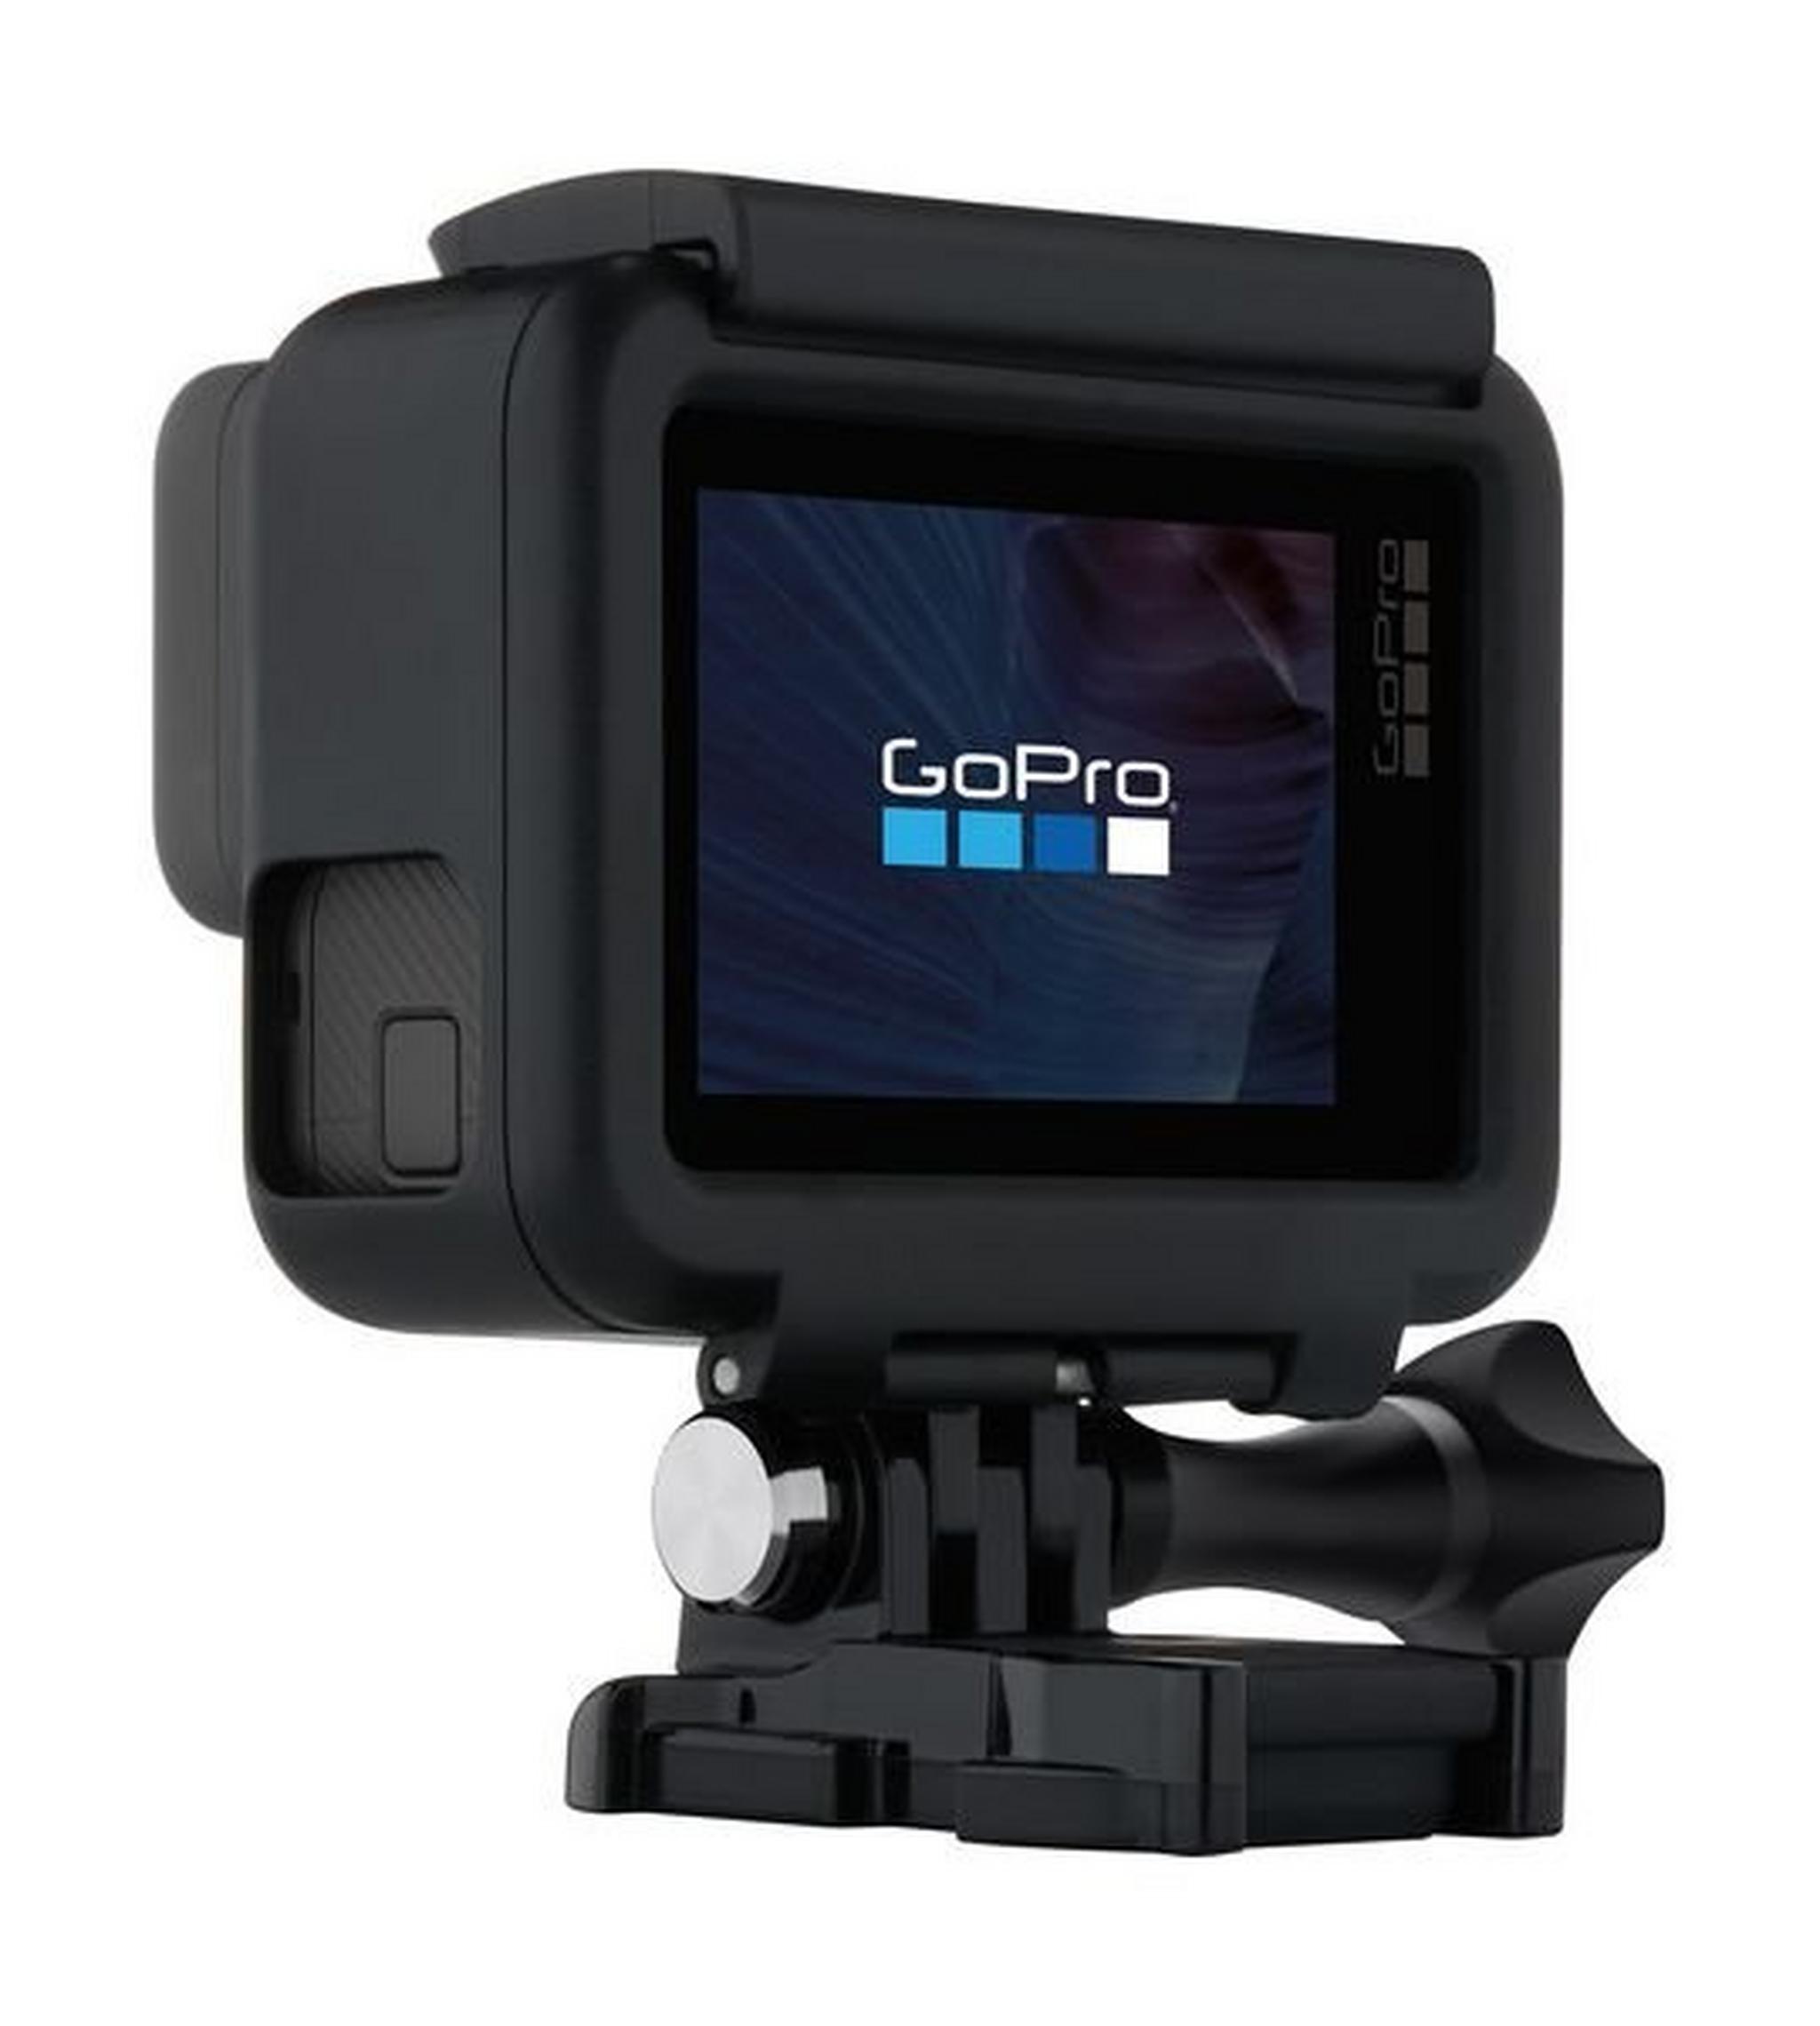 كاميرا الأكشن جو برو هيرو ٥ بشاشة لمس - دقة ١٢ ميجابكسل للصور / ٤كي للفيديو - واي فاي